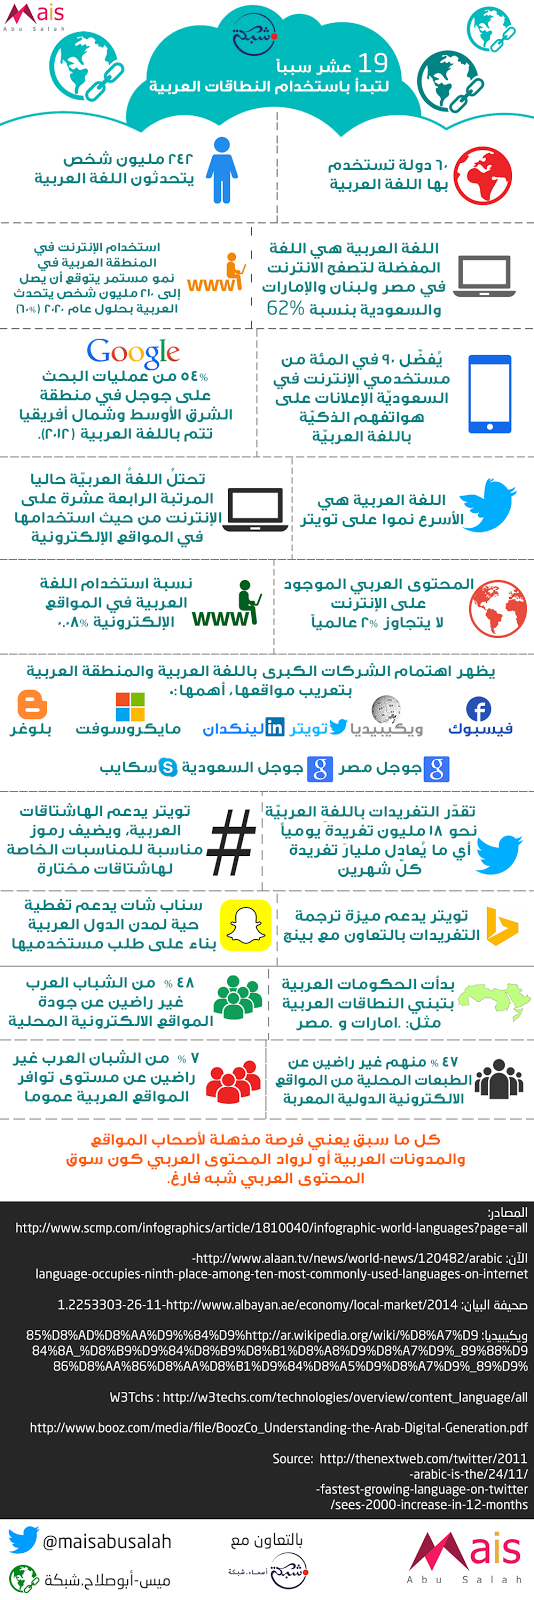 19 سبباً لتبدأ باستخدام النطاقات العربية #انفوجرافيك